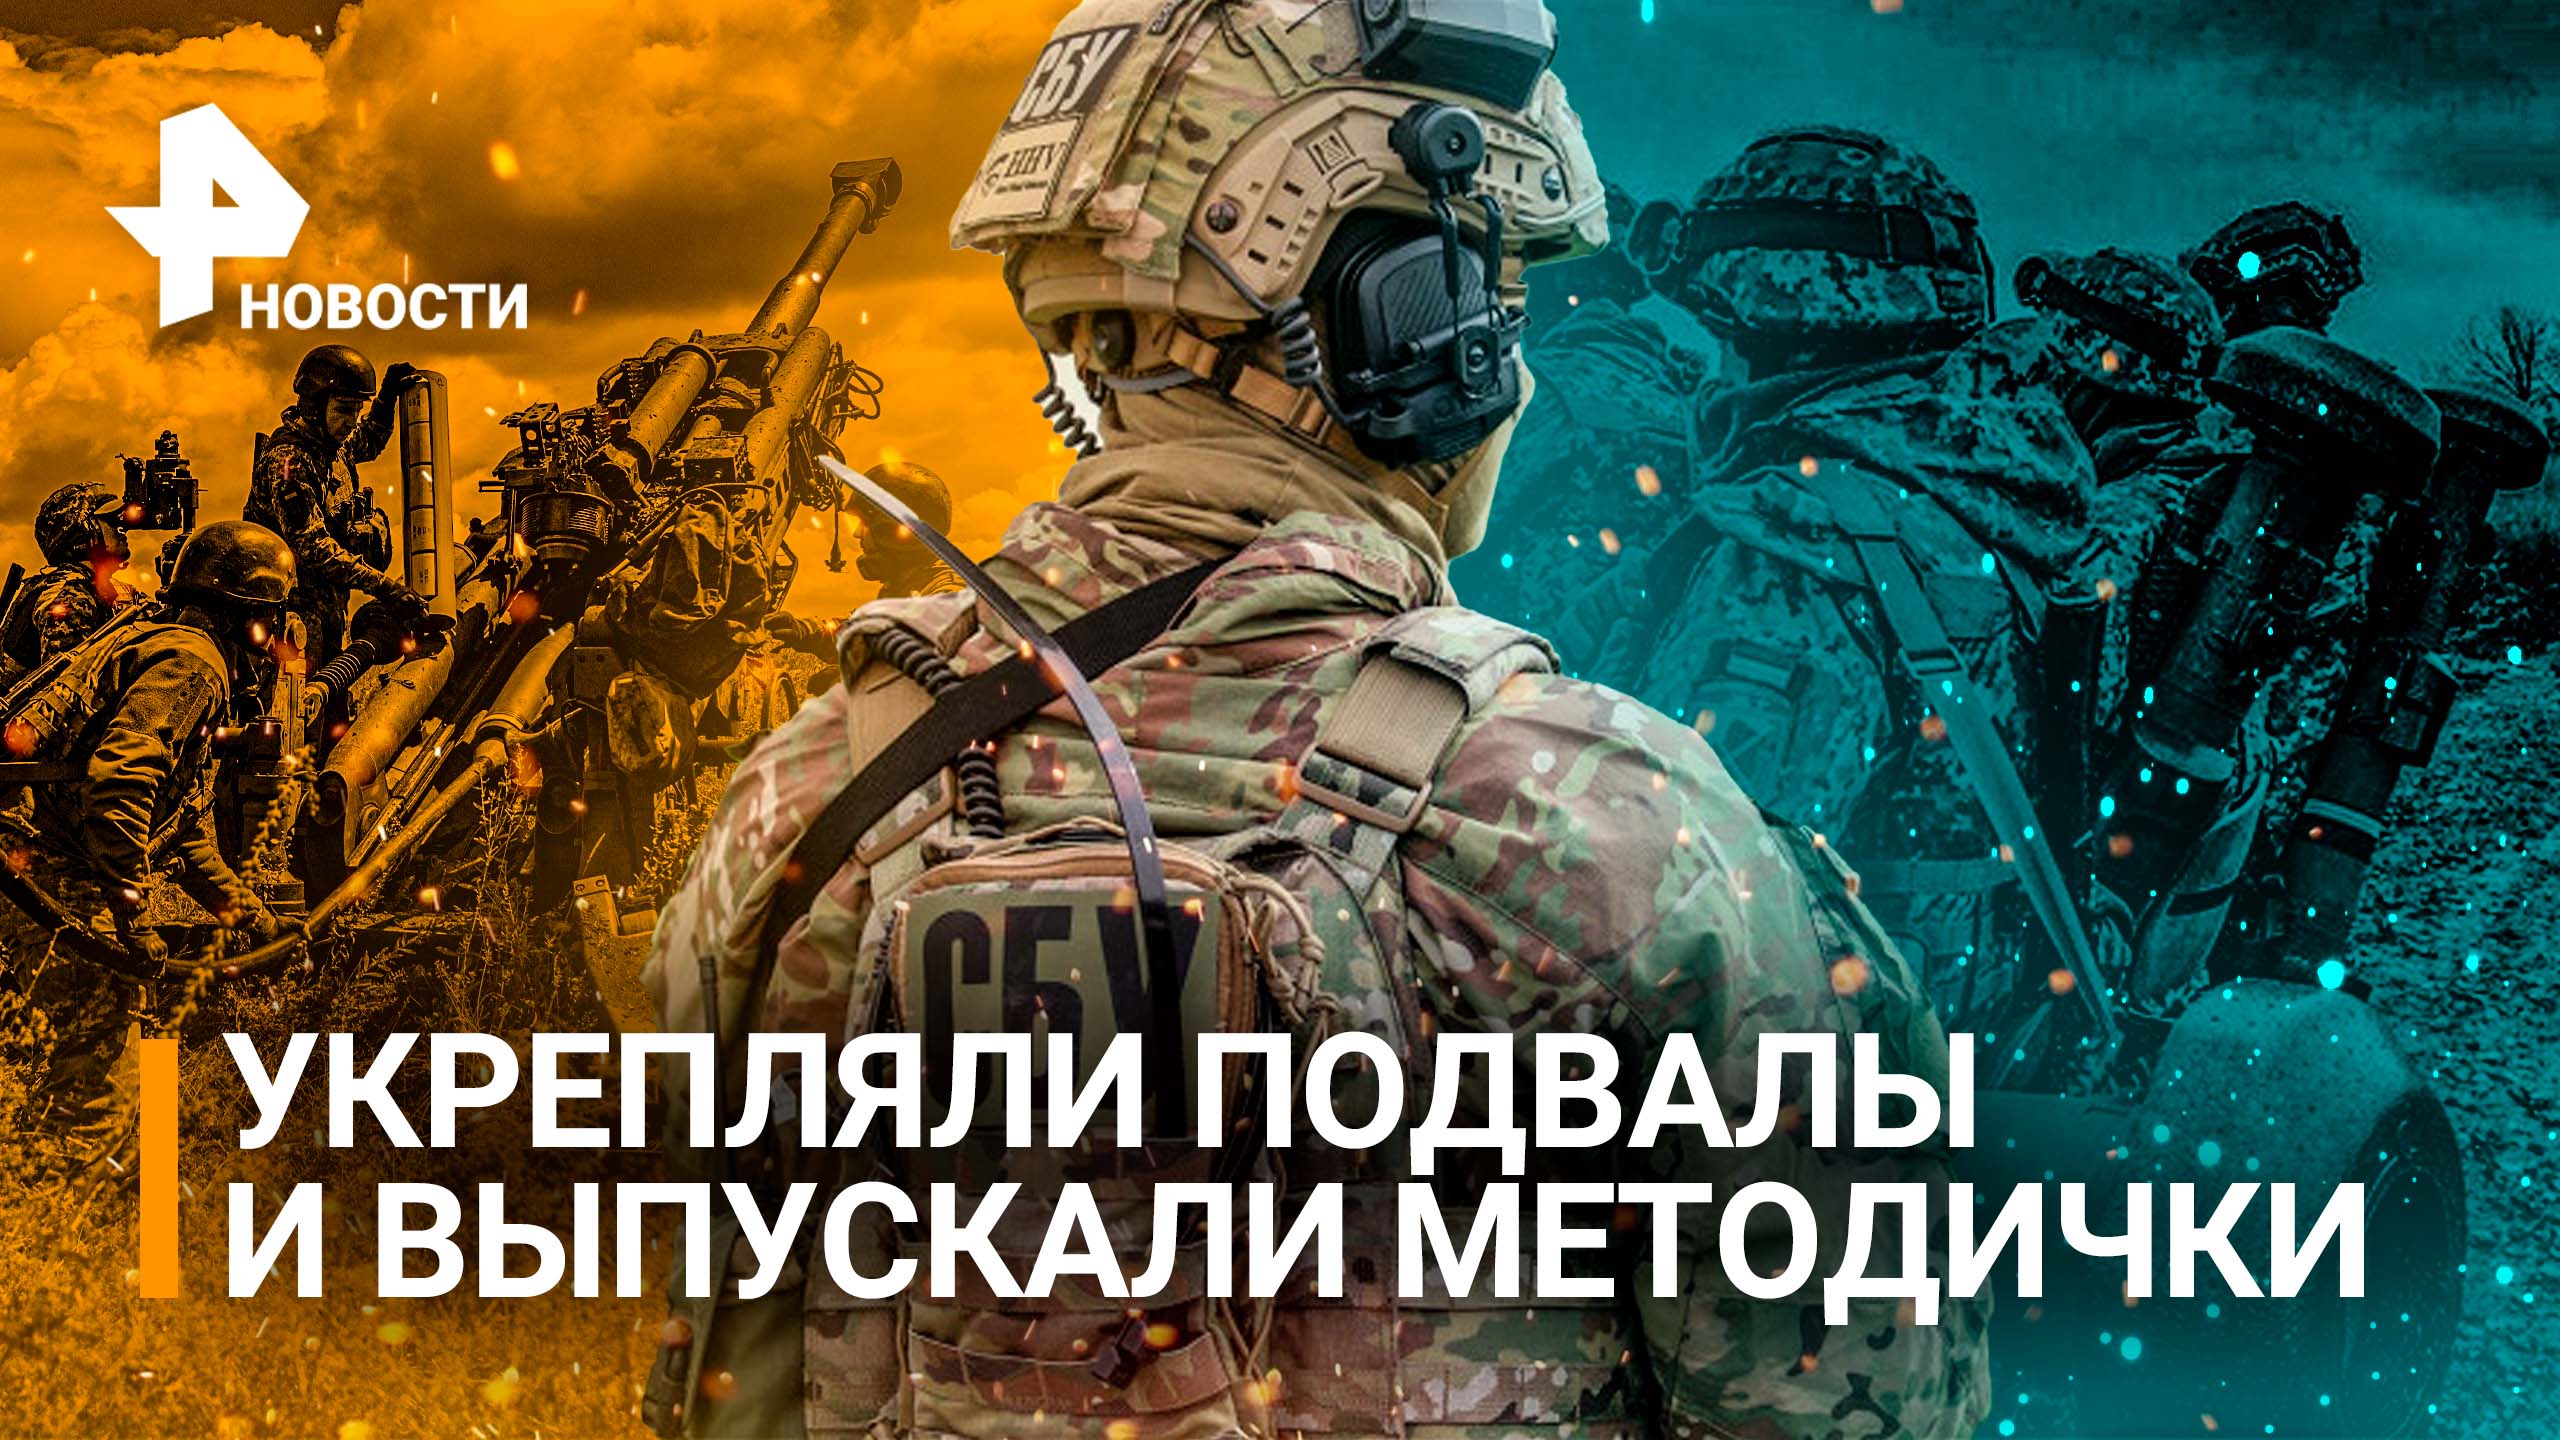 Украина готовилась напасть с 2019 года: тайные подвалы ВСУ и методички о нашей технике / РЕН Новости